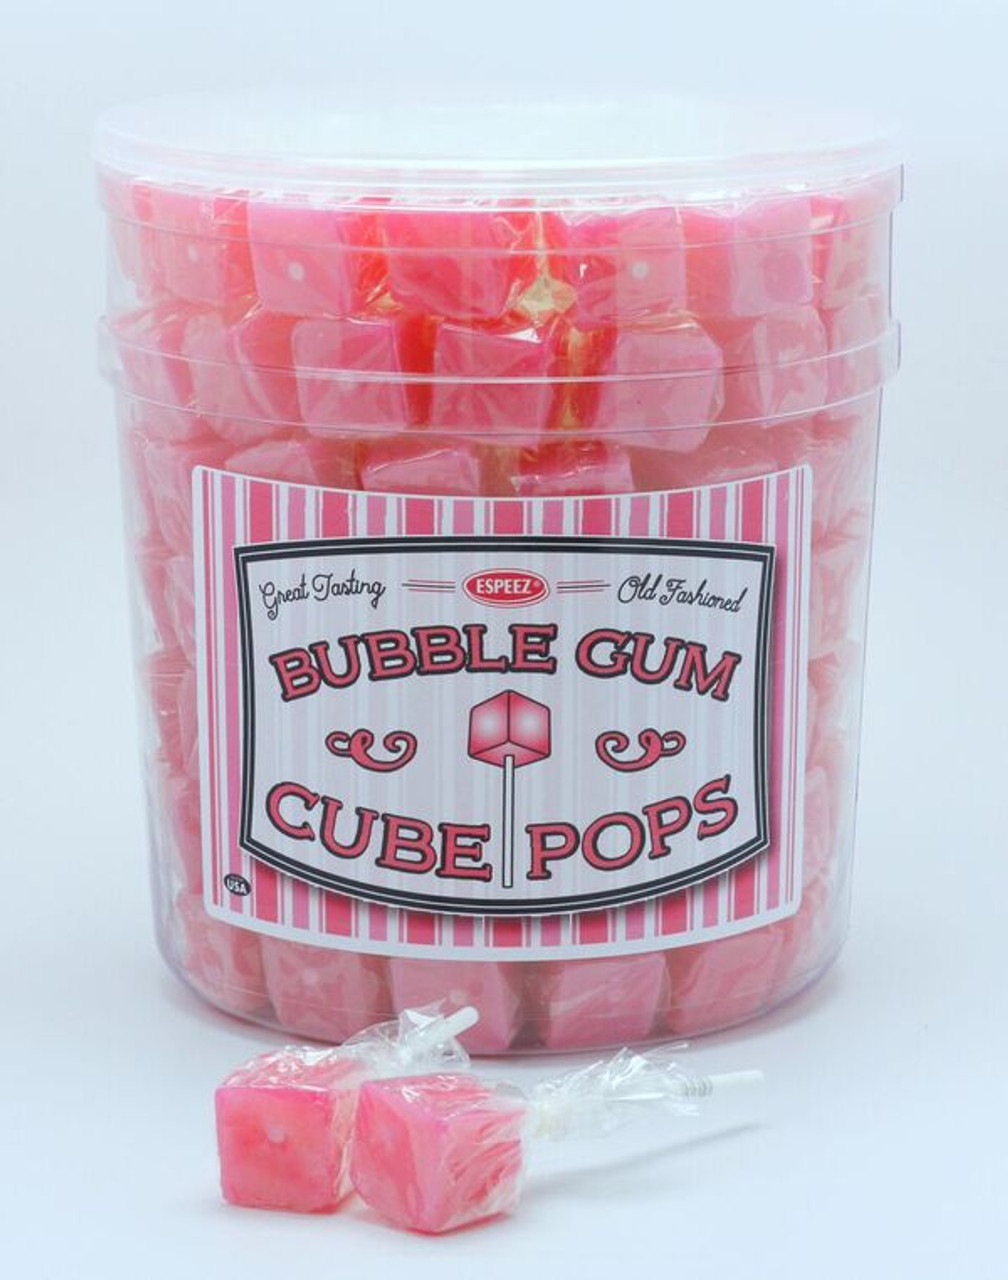 Bubble Gum Cube Pops - 100 Ct. Tub